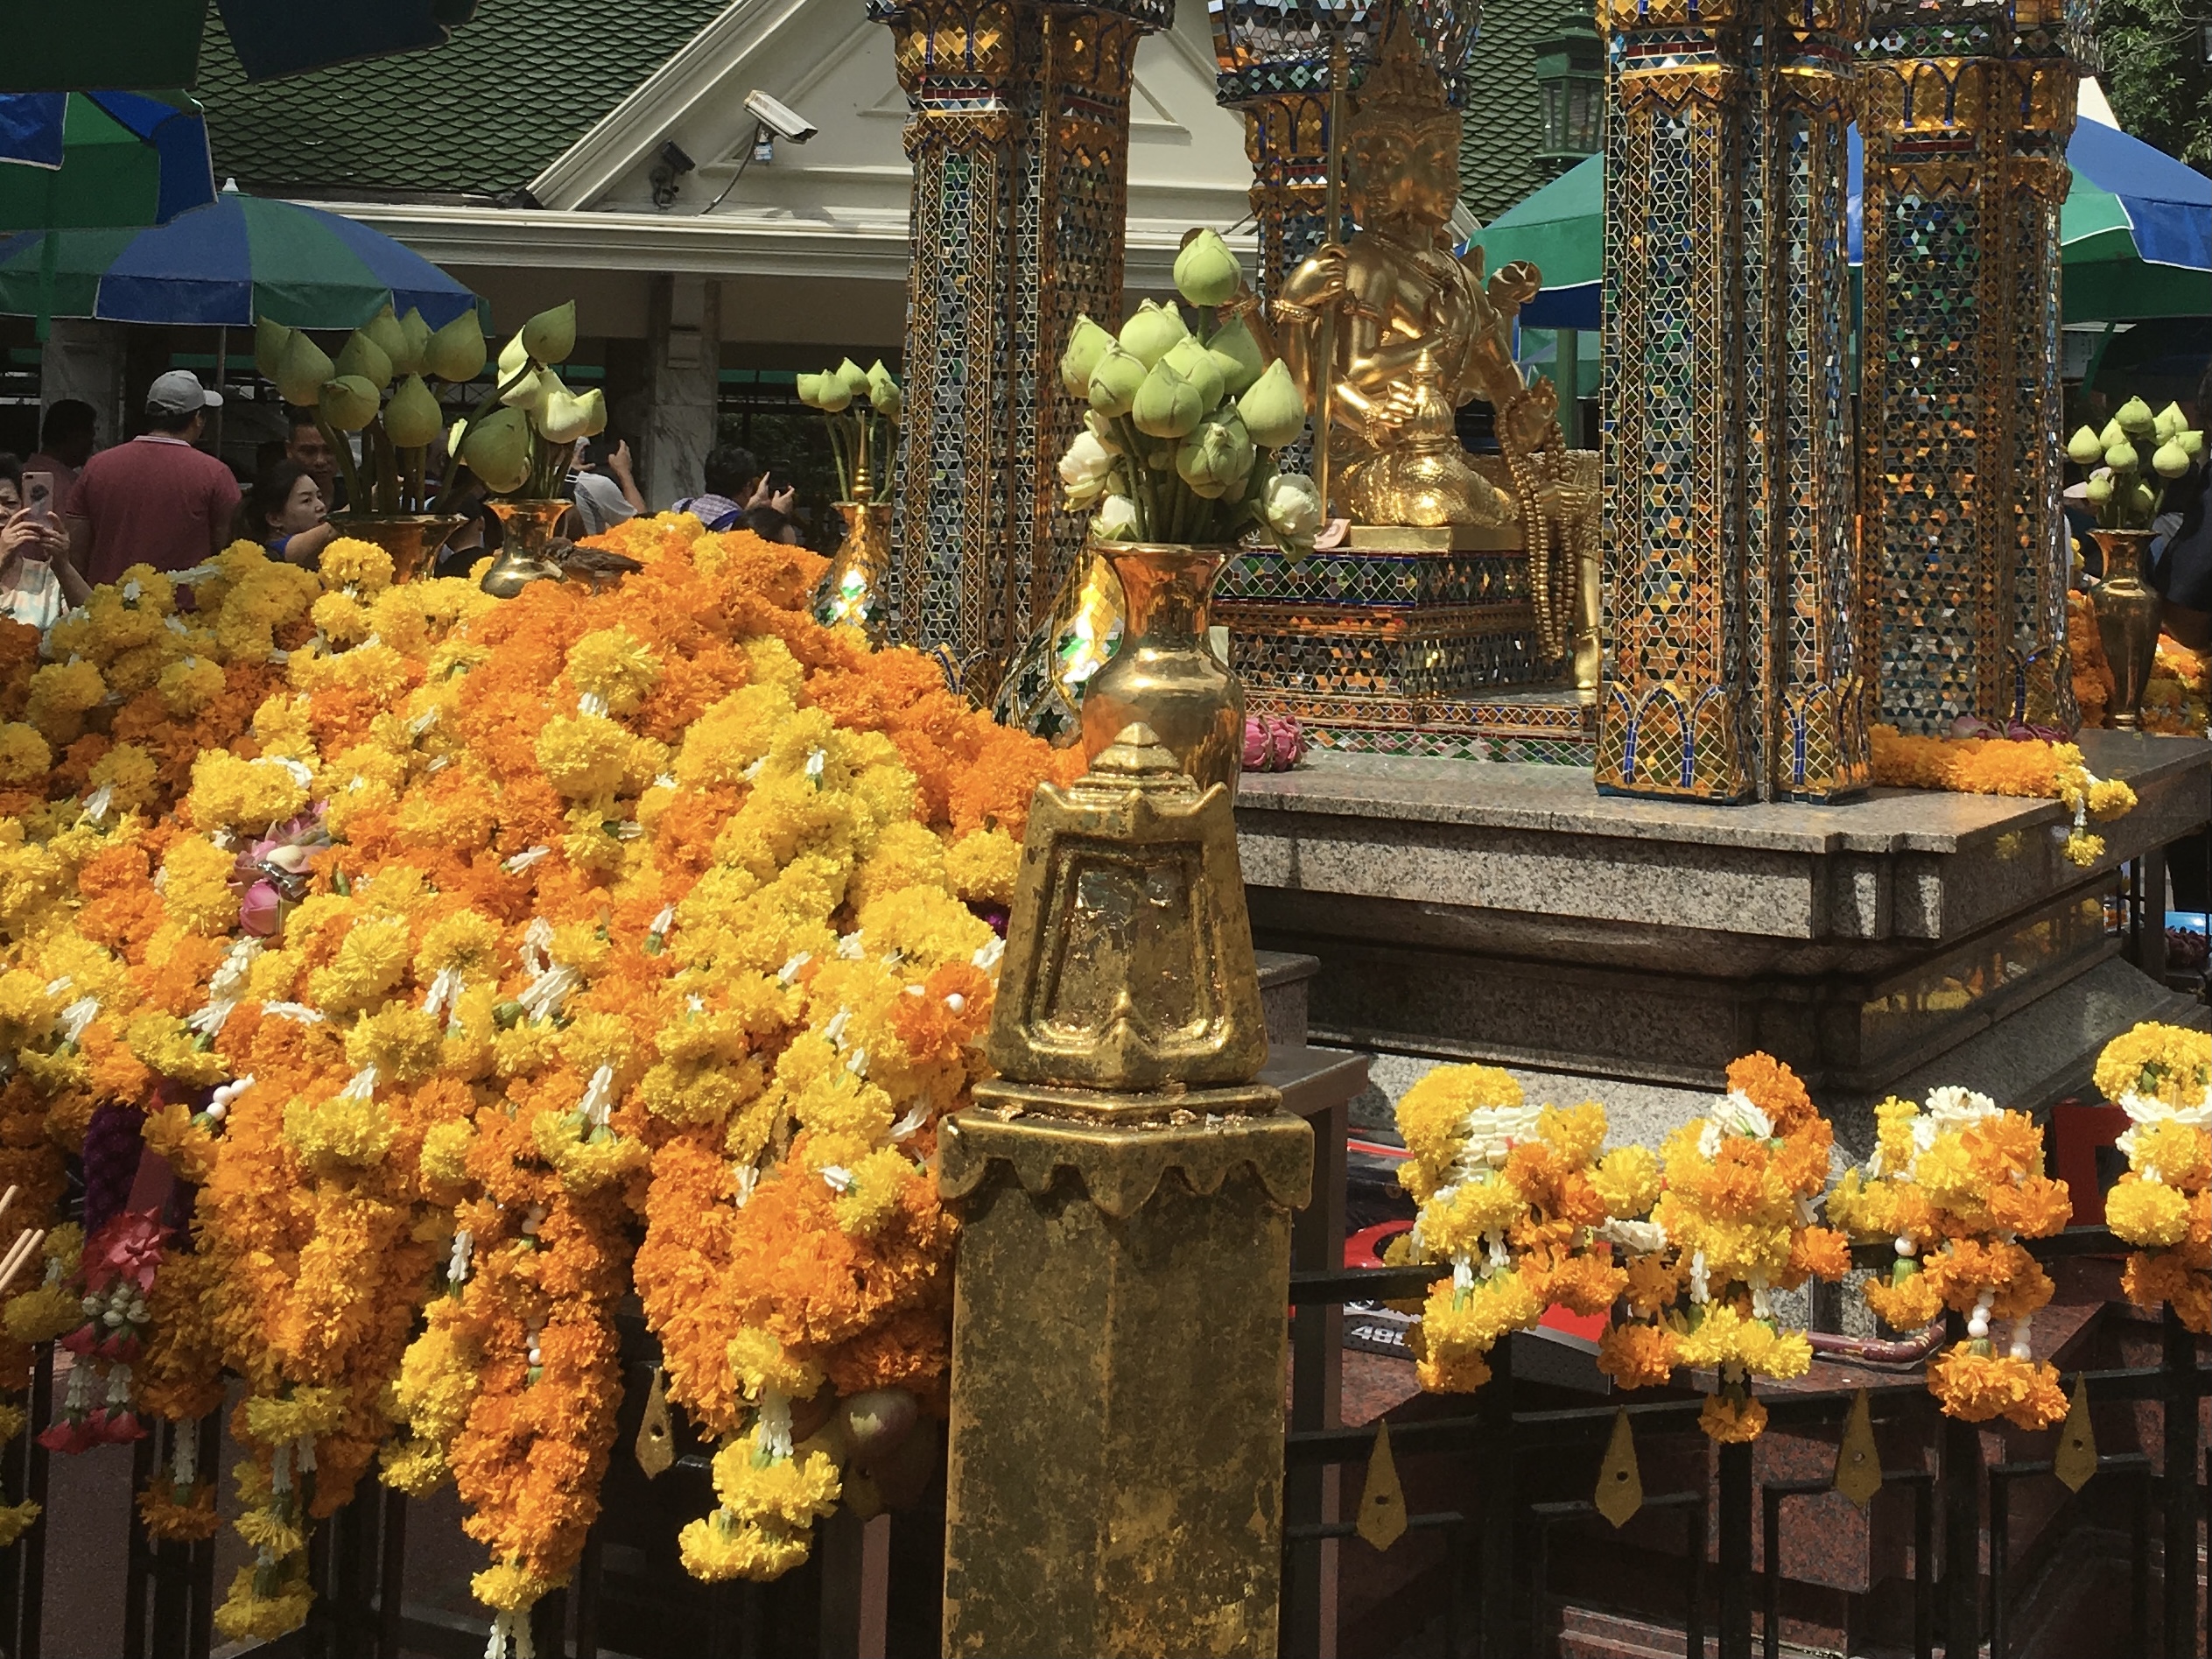 黄色とオレンジのマリーゴールドの花を、１メートル以上も繋ぎ合わせたガーランド状のものが渦高く供えられている。